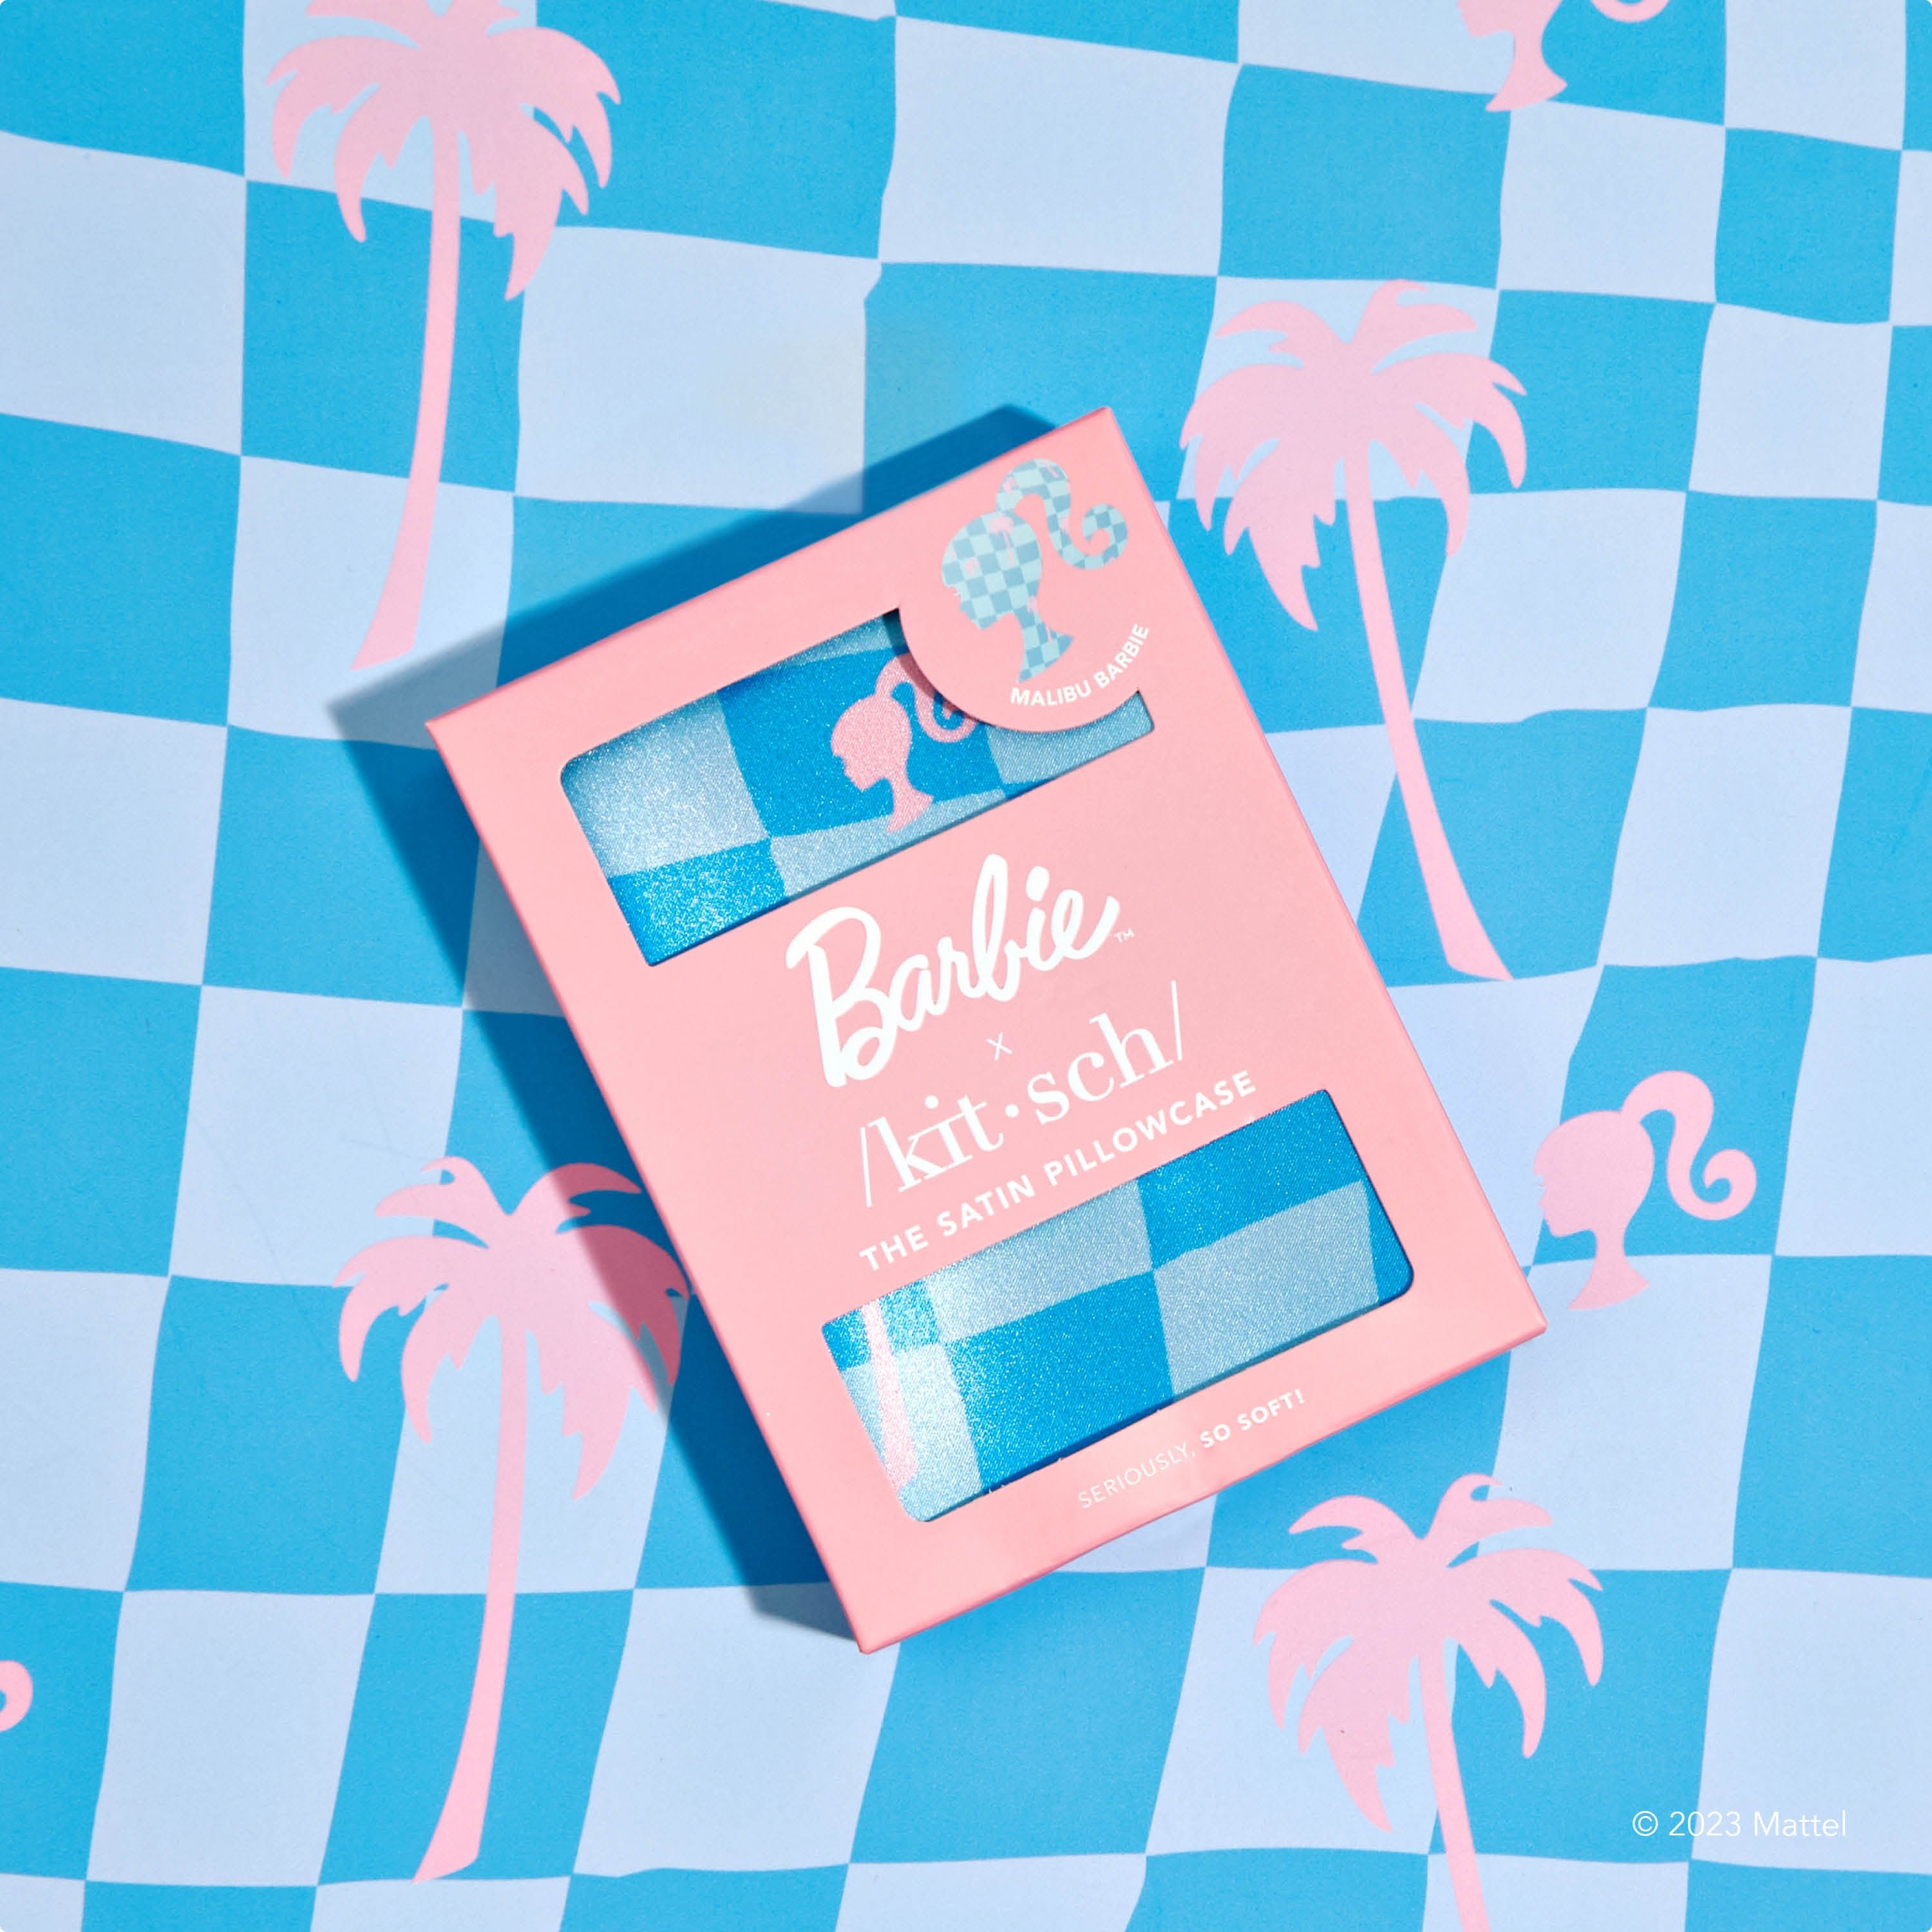 Barbie x Kitsch King 베갯잇 - Malibu Barbie